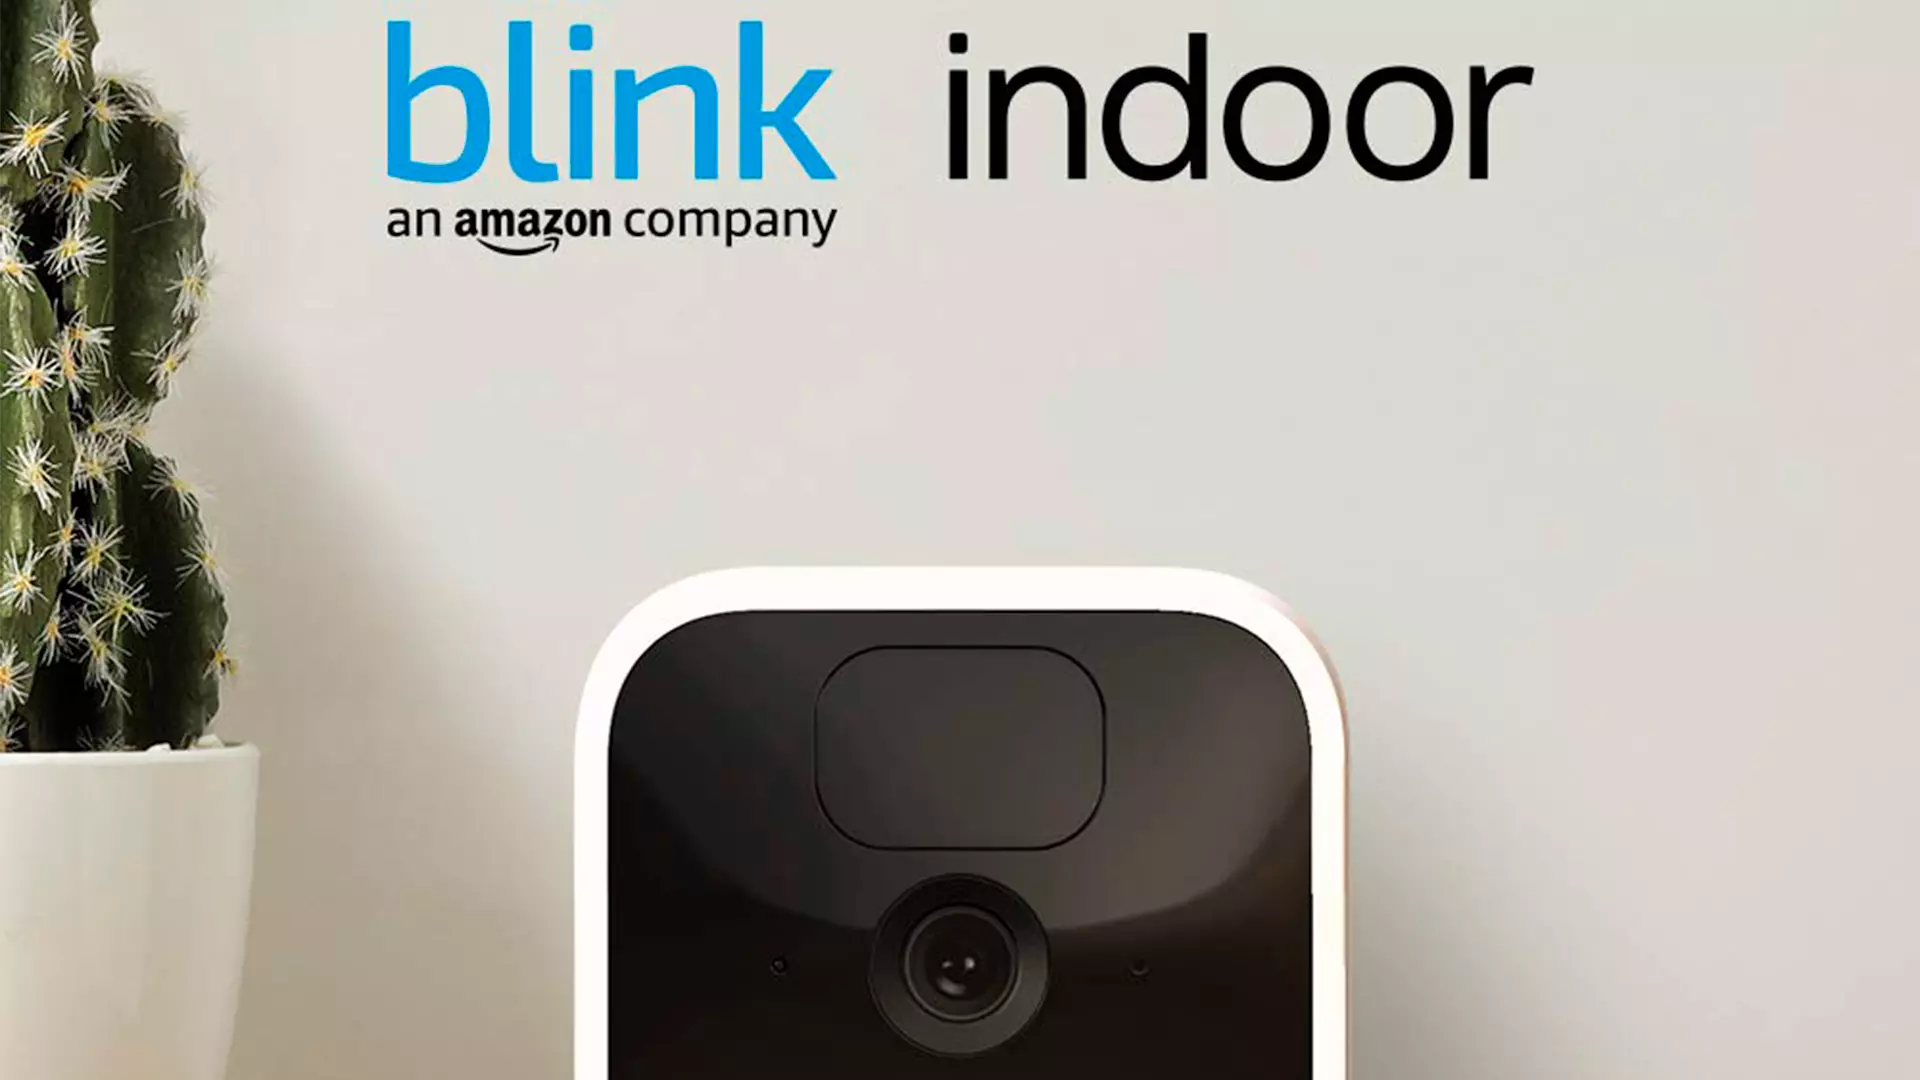 Oferta Especial Blink Indoor | Cámara de seguridad HD inalámbrica con 2 años de autonomía, detección de movimiento, audio bidireccional, compatible con Alexa por solo 49,99€